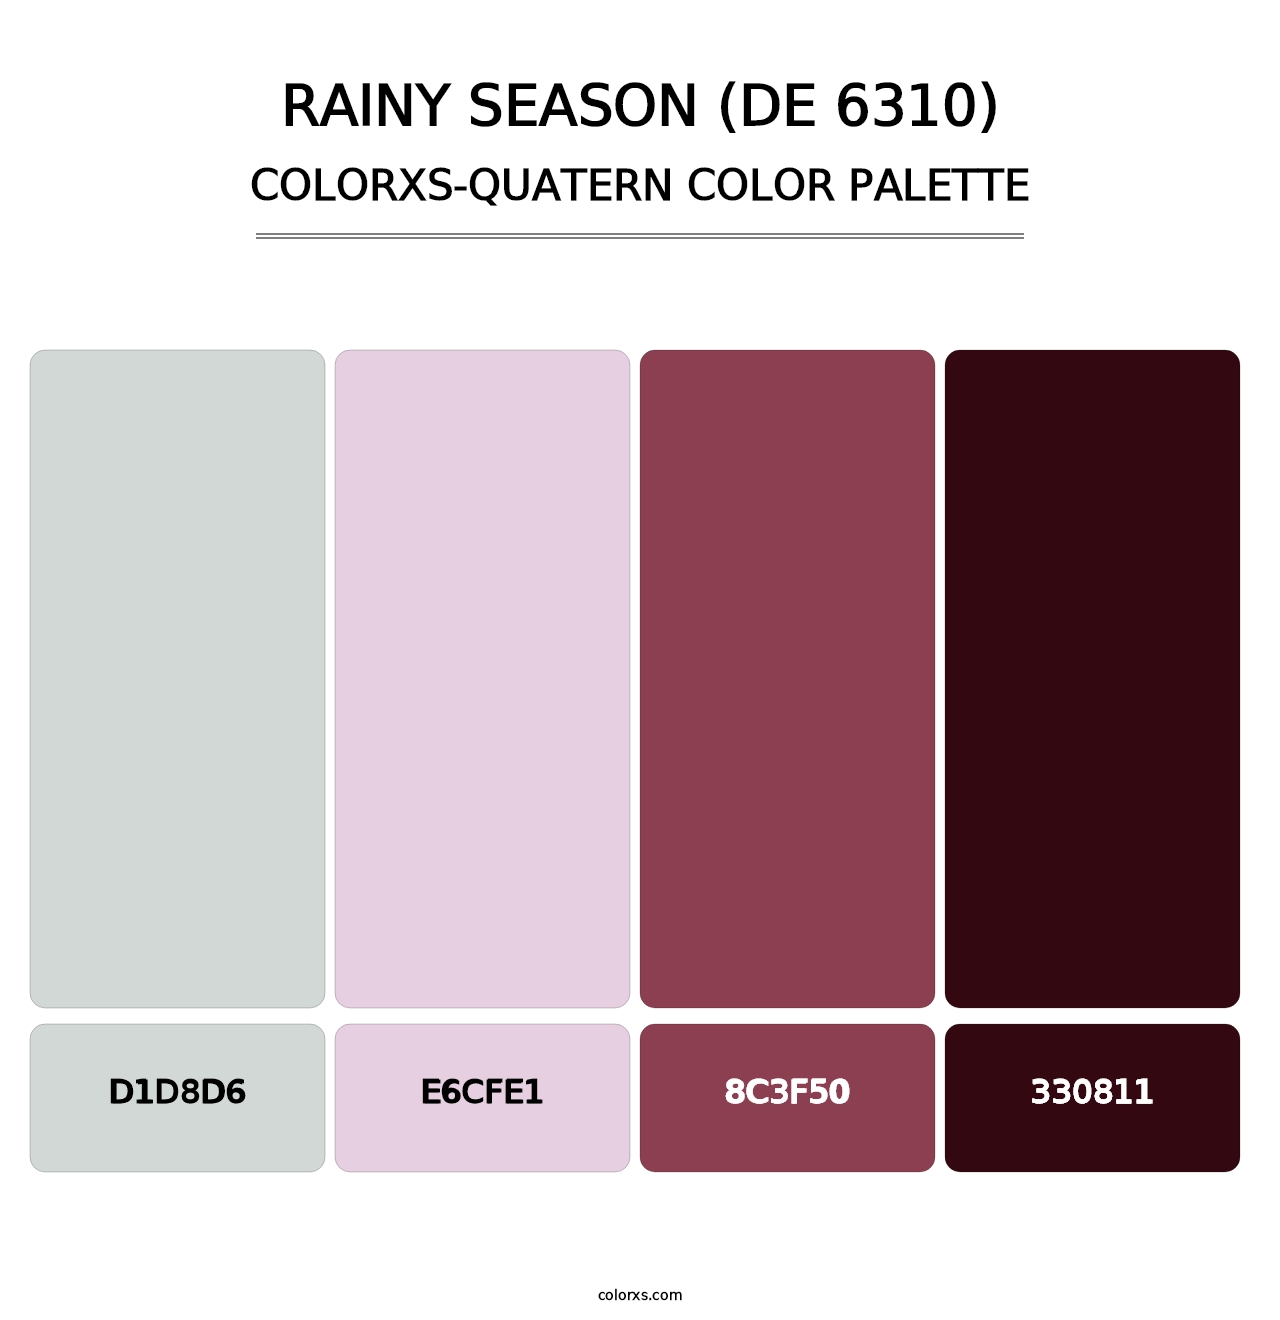 Rainy Season (DE 6310) - Colorxs Quatern Palette